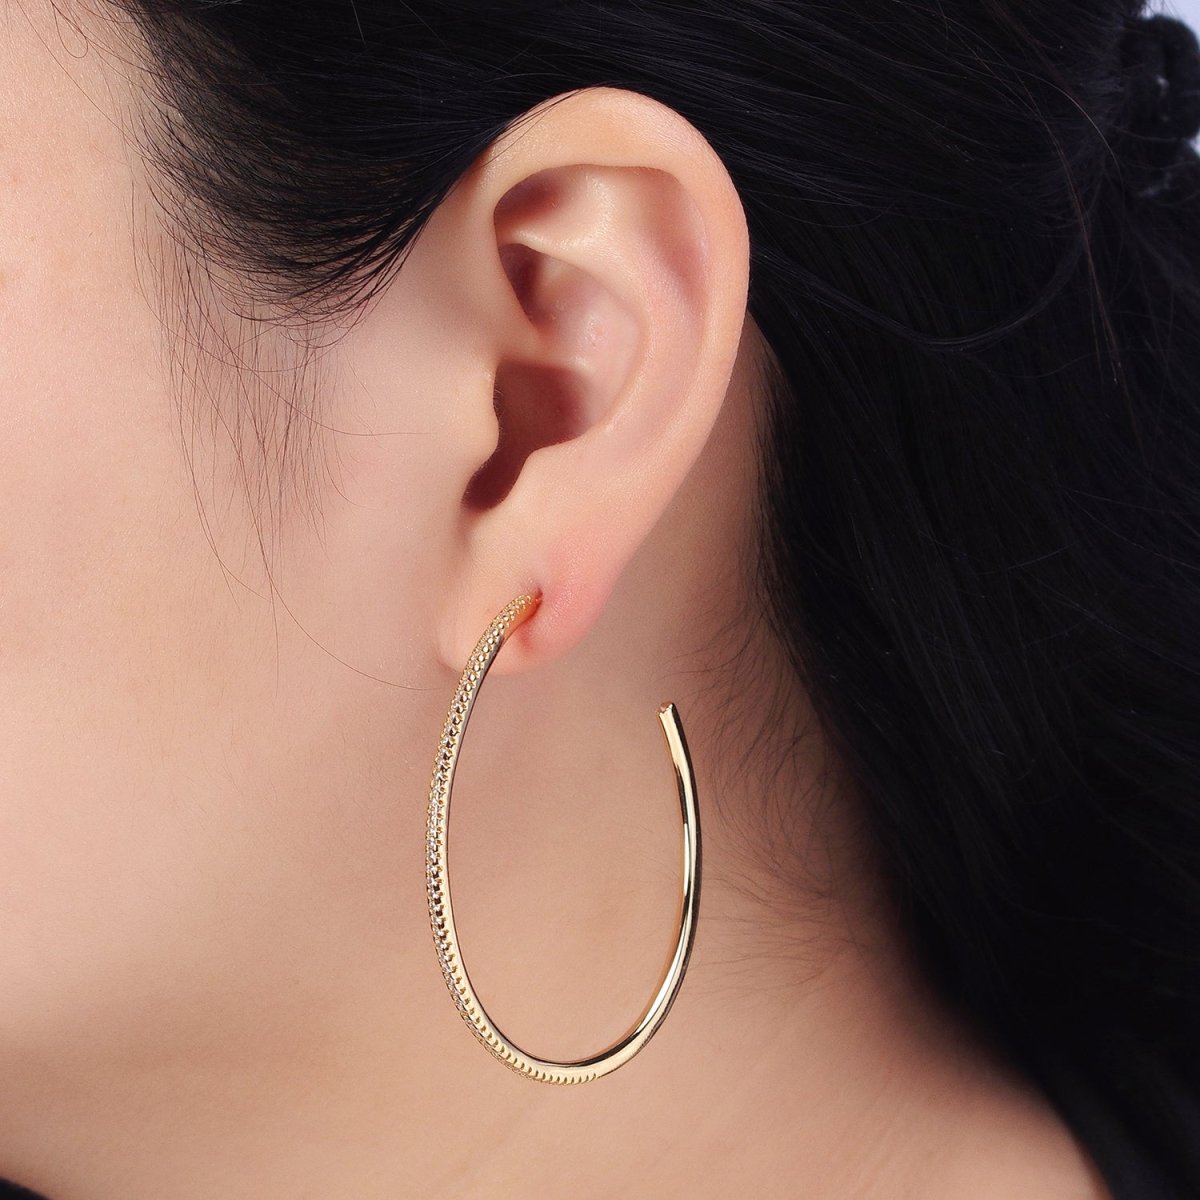 Big Gold Patterned Hoop Earrings Silver Textured Hoop Earring AB761 - AB768 - DLUXCA